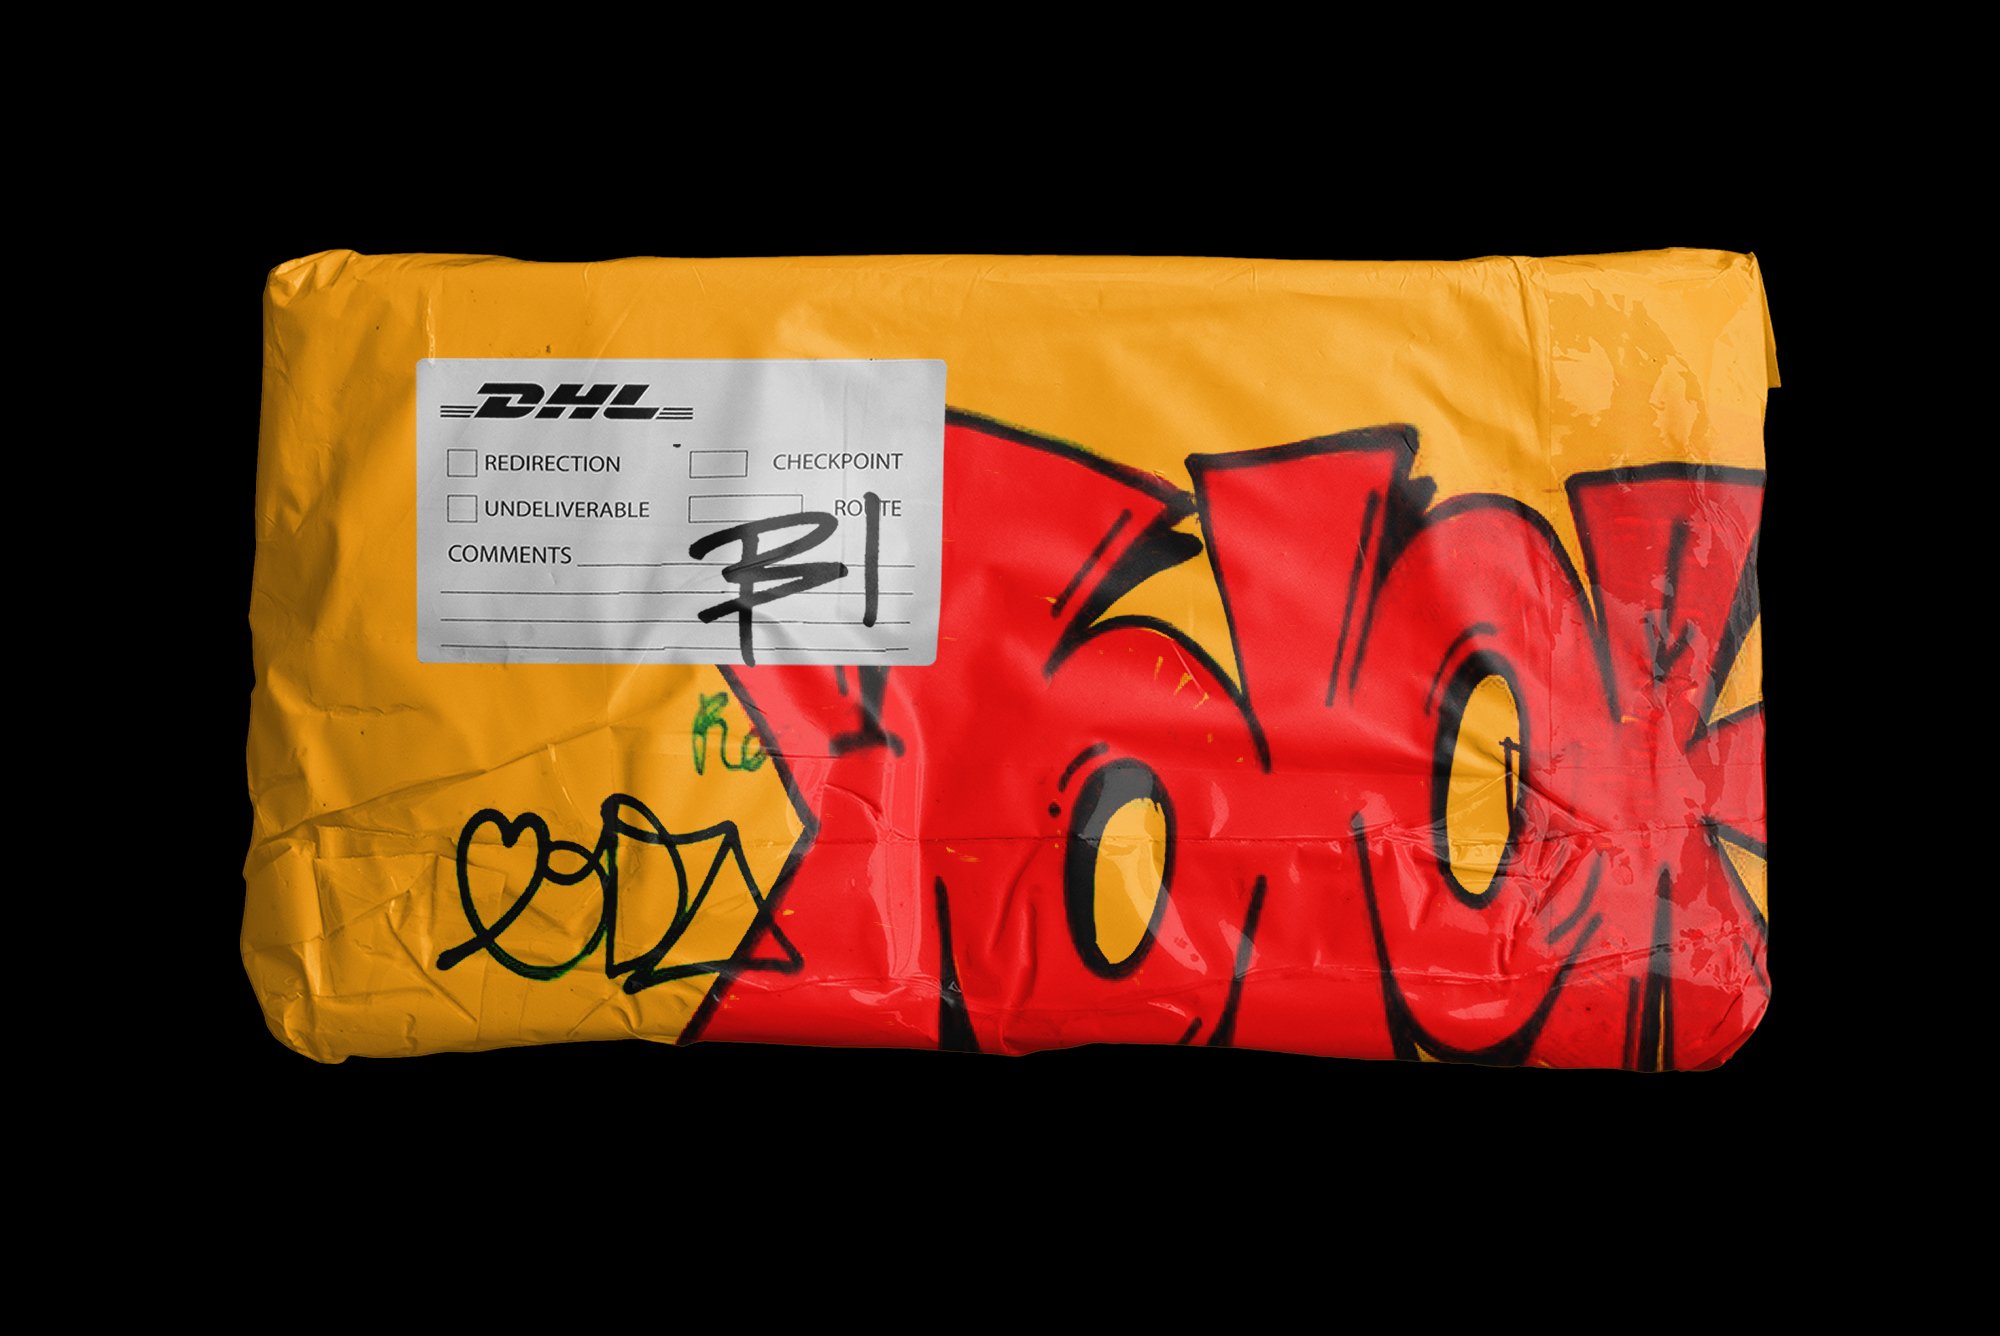 现代潮流快递物流包裹包装袋样机PNG透明包贴纸 Post Pack Bag Mockup 样机素材 第9张